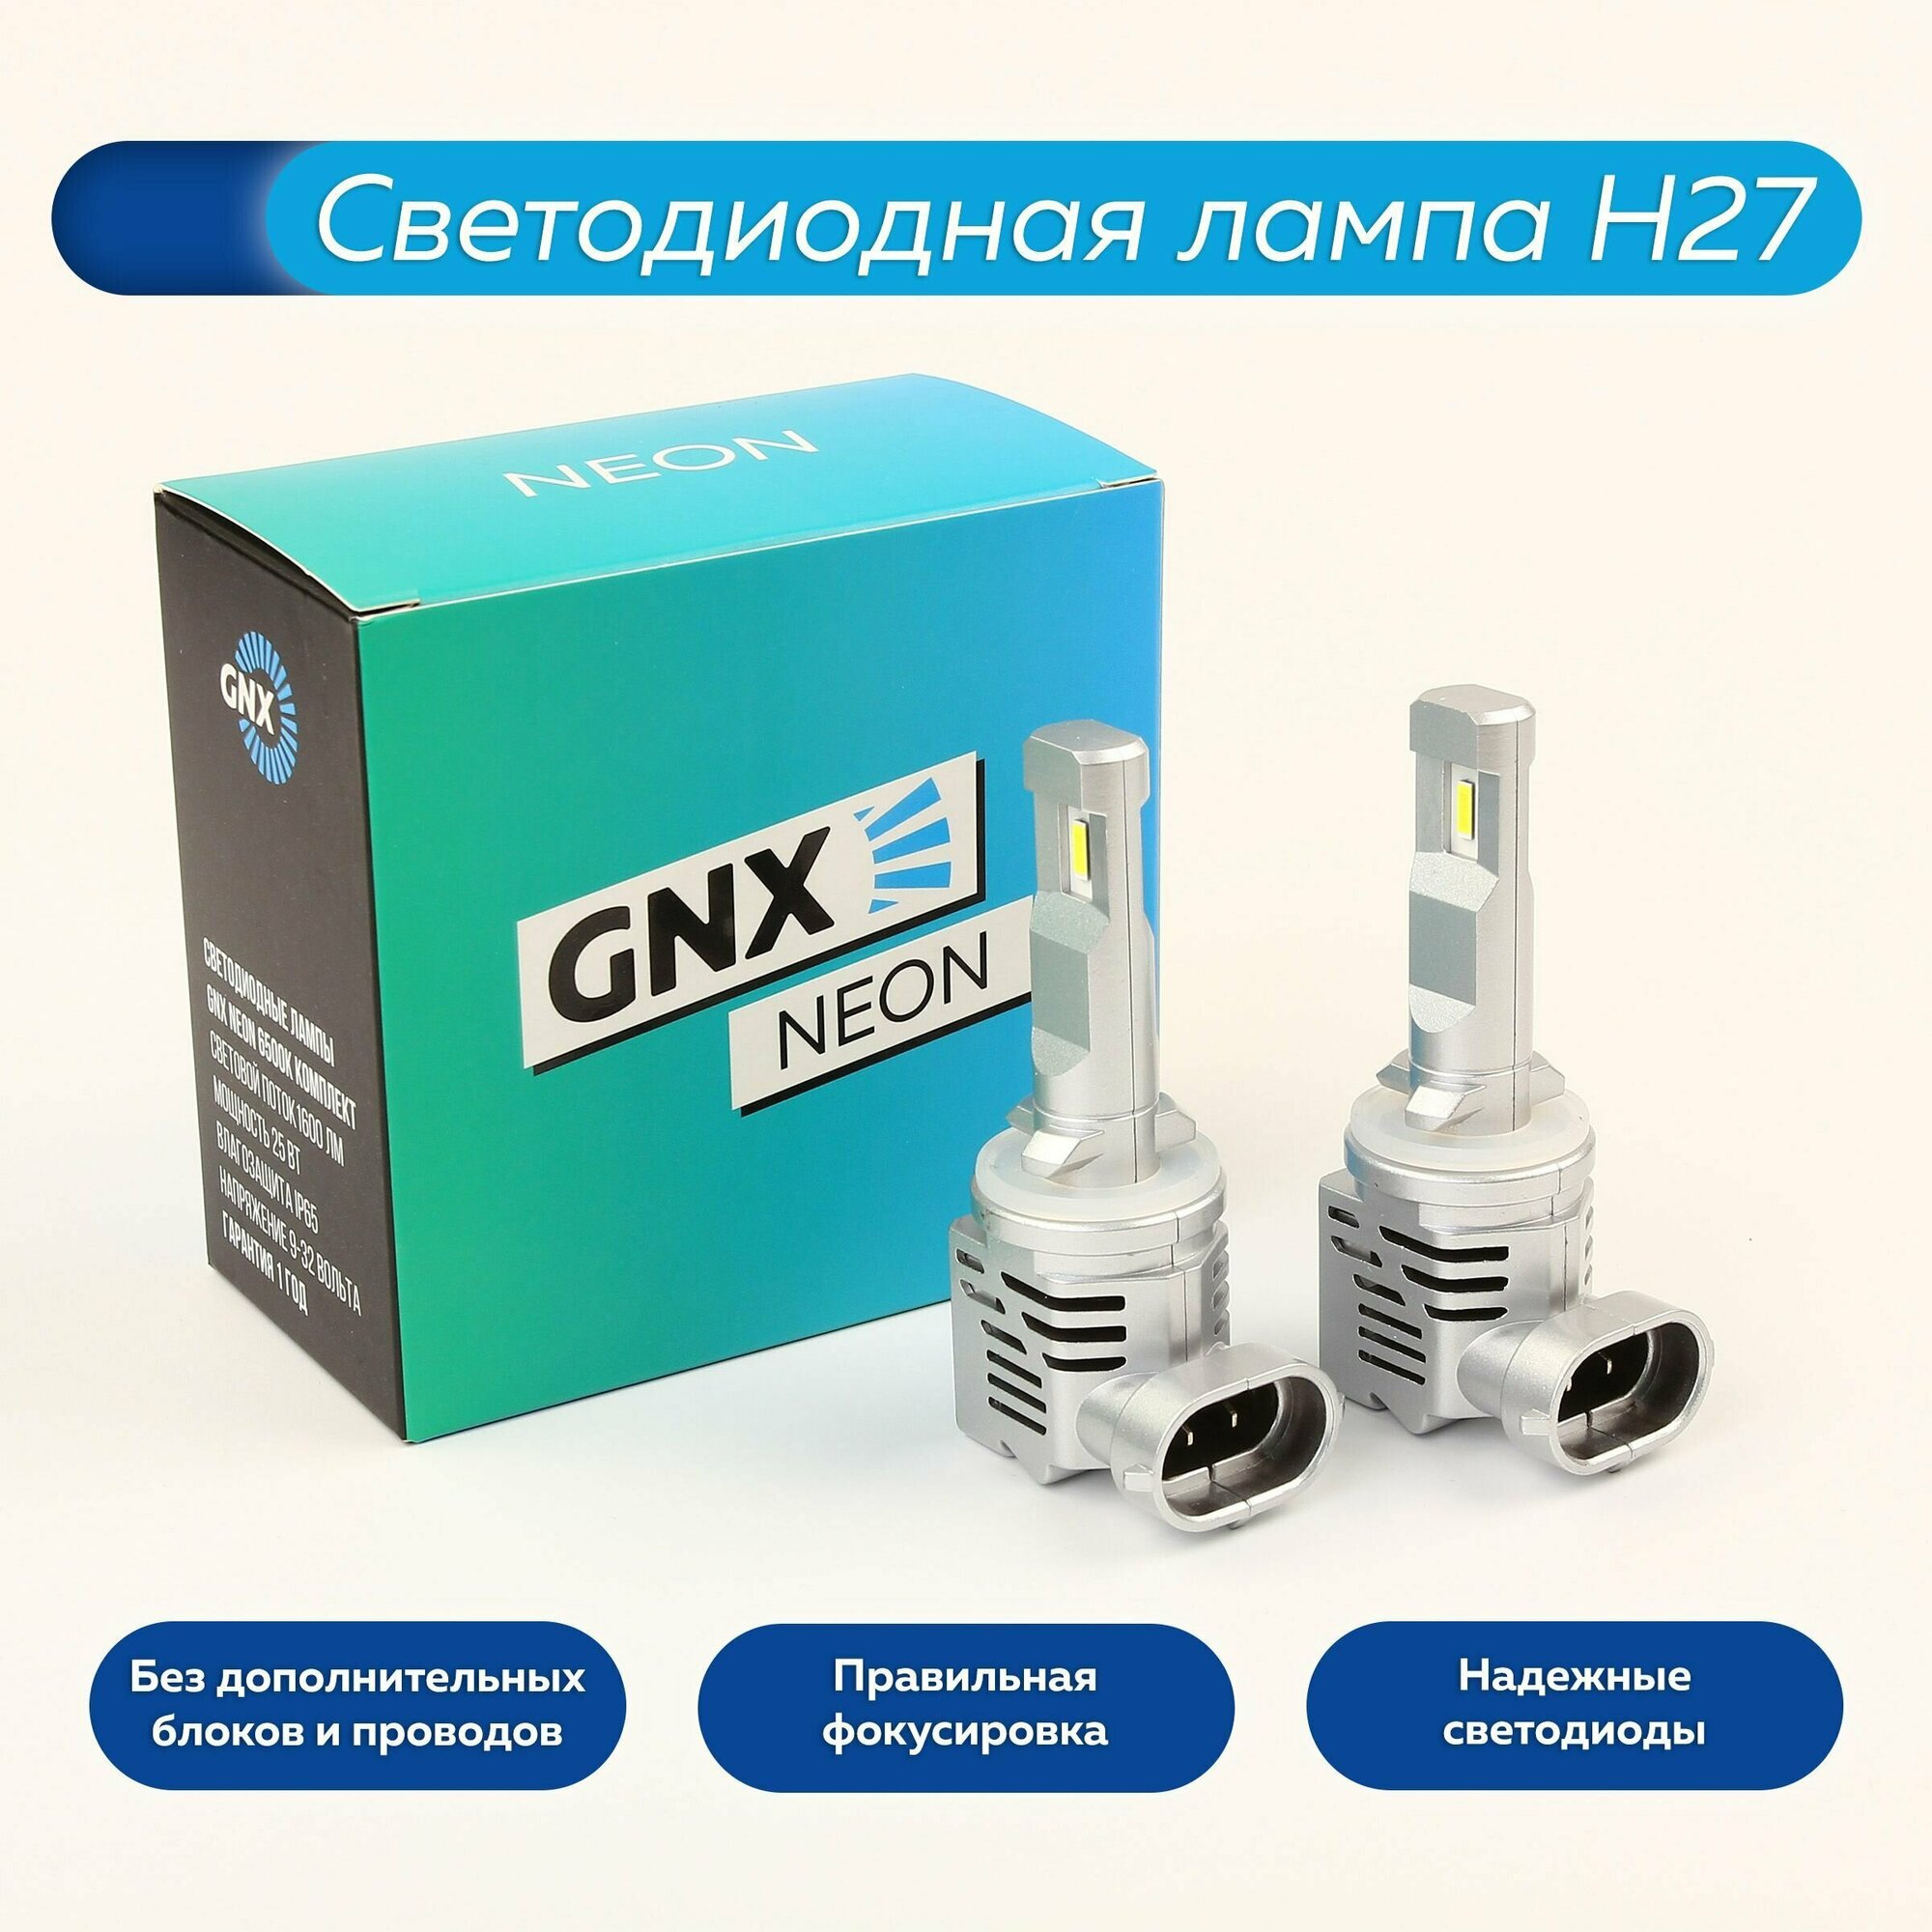 Светодиодные лампы автомобильные GNX NEON автолампа led лед H27 температура света 6000K белый лампочка комплект 2 шт